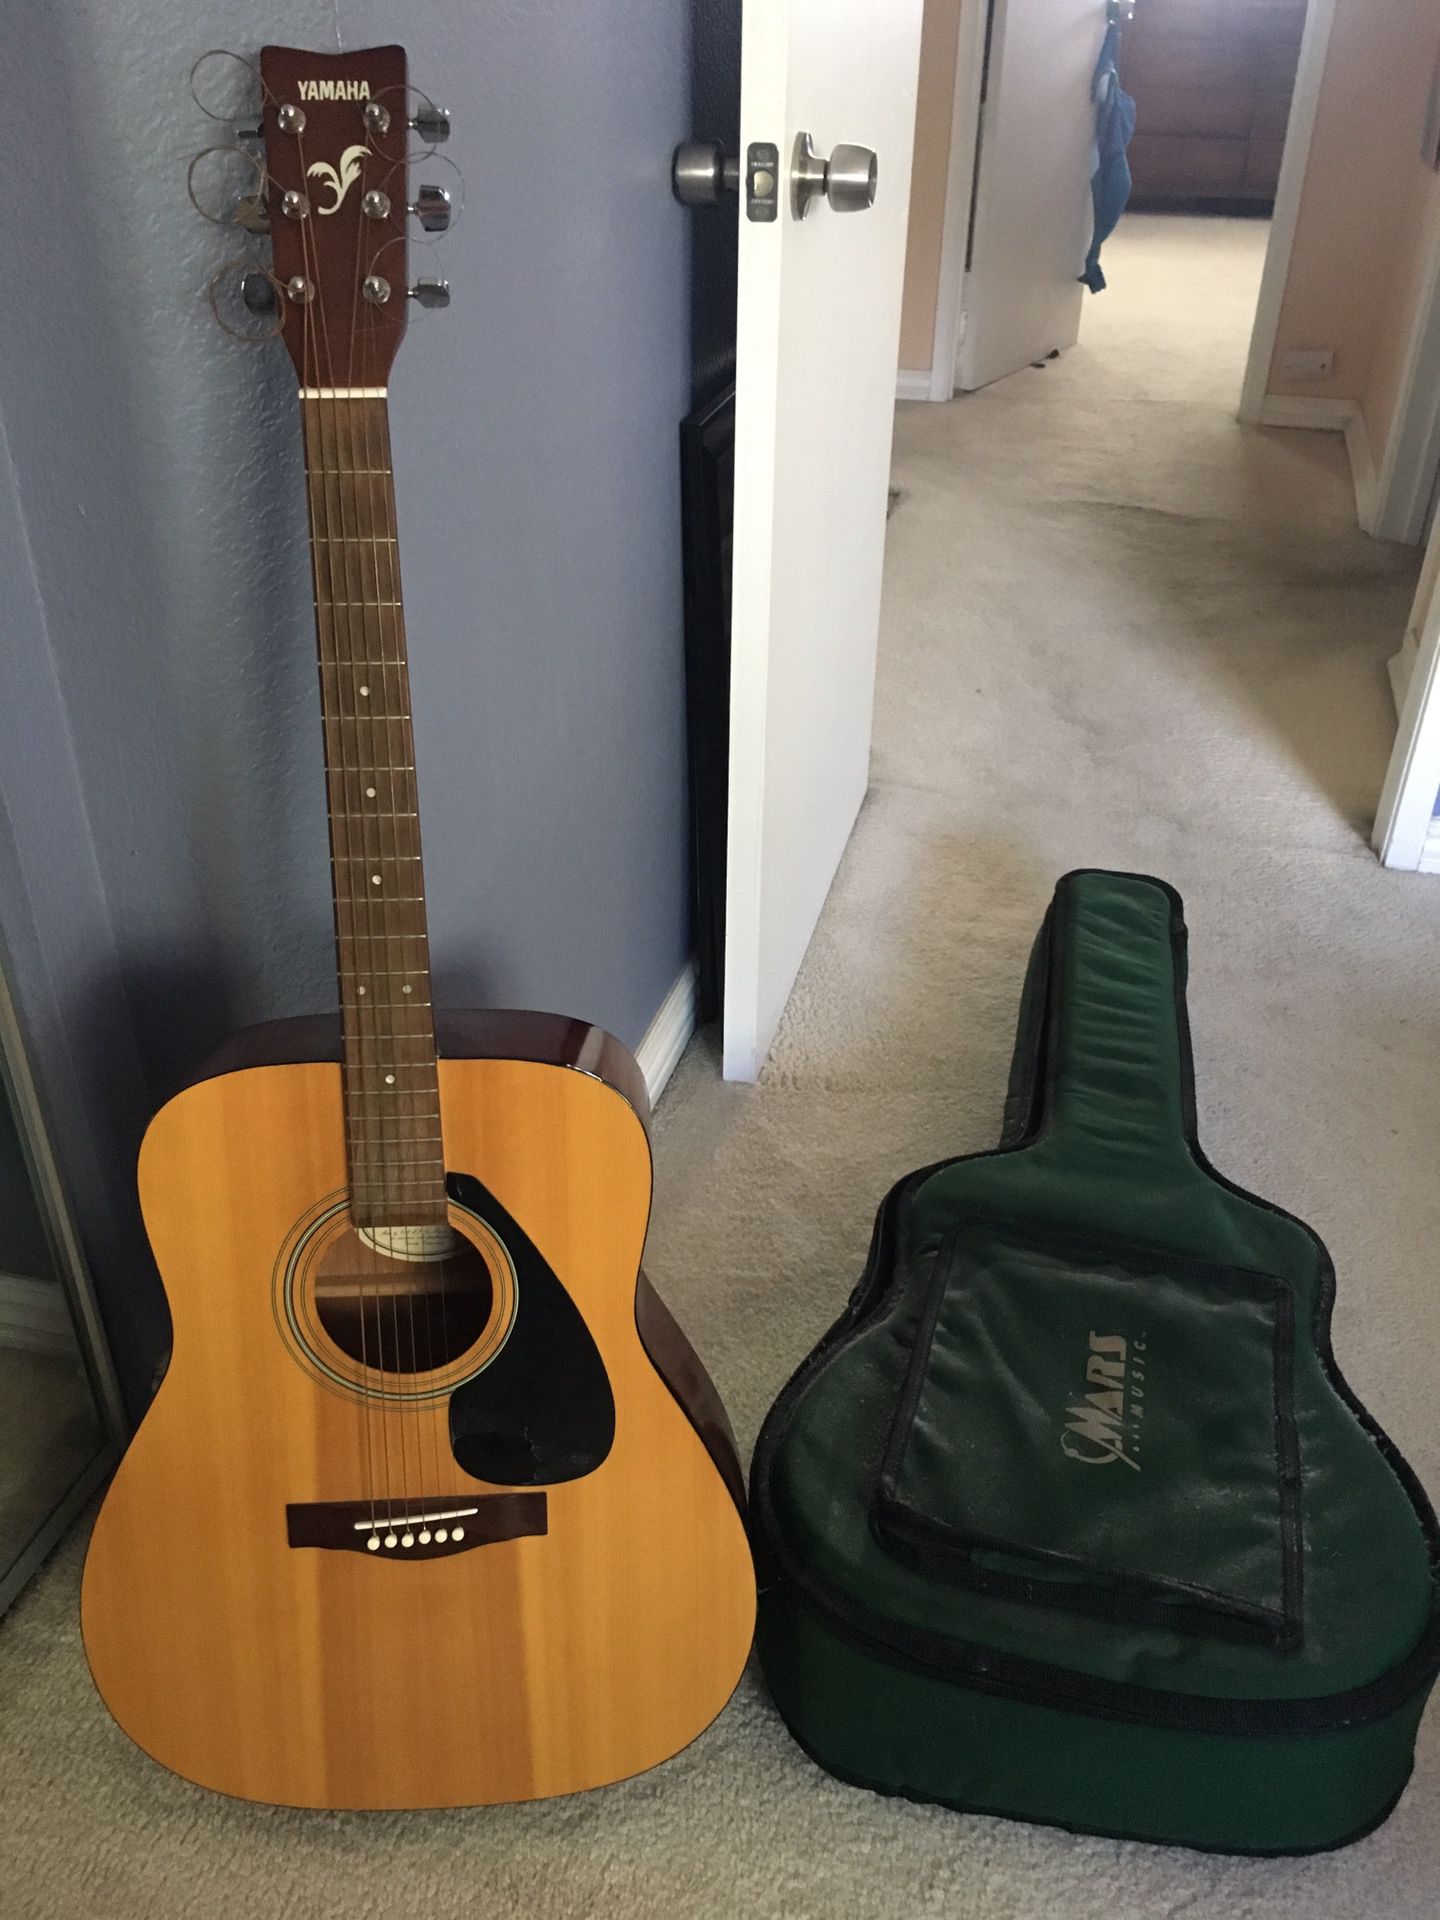 Yamaha guitar and gig bag